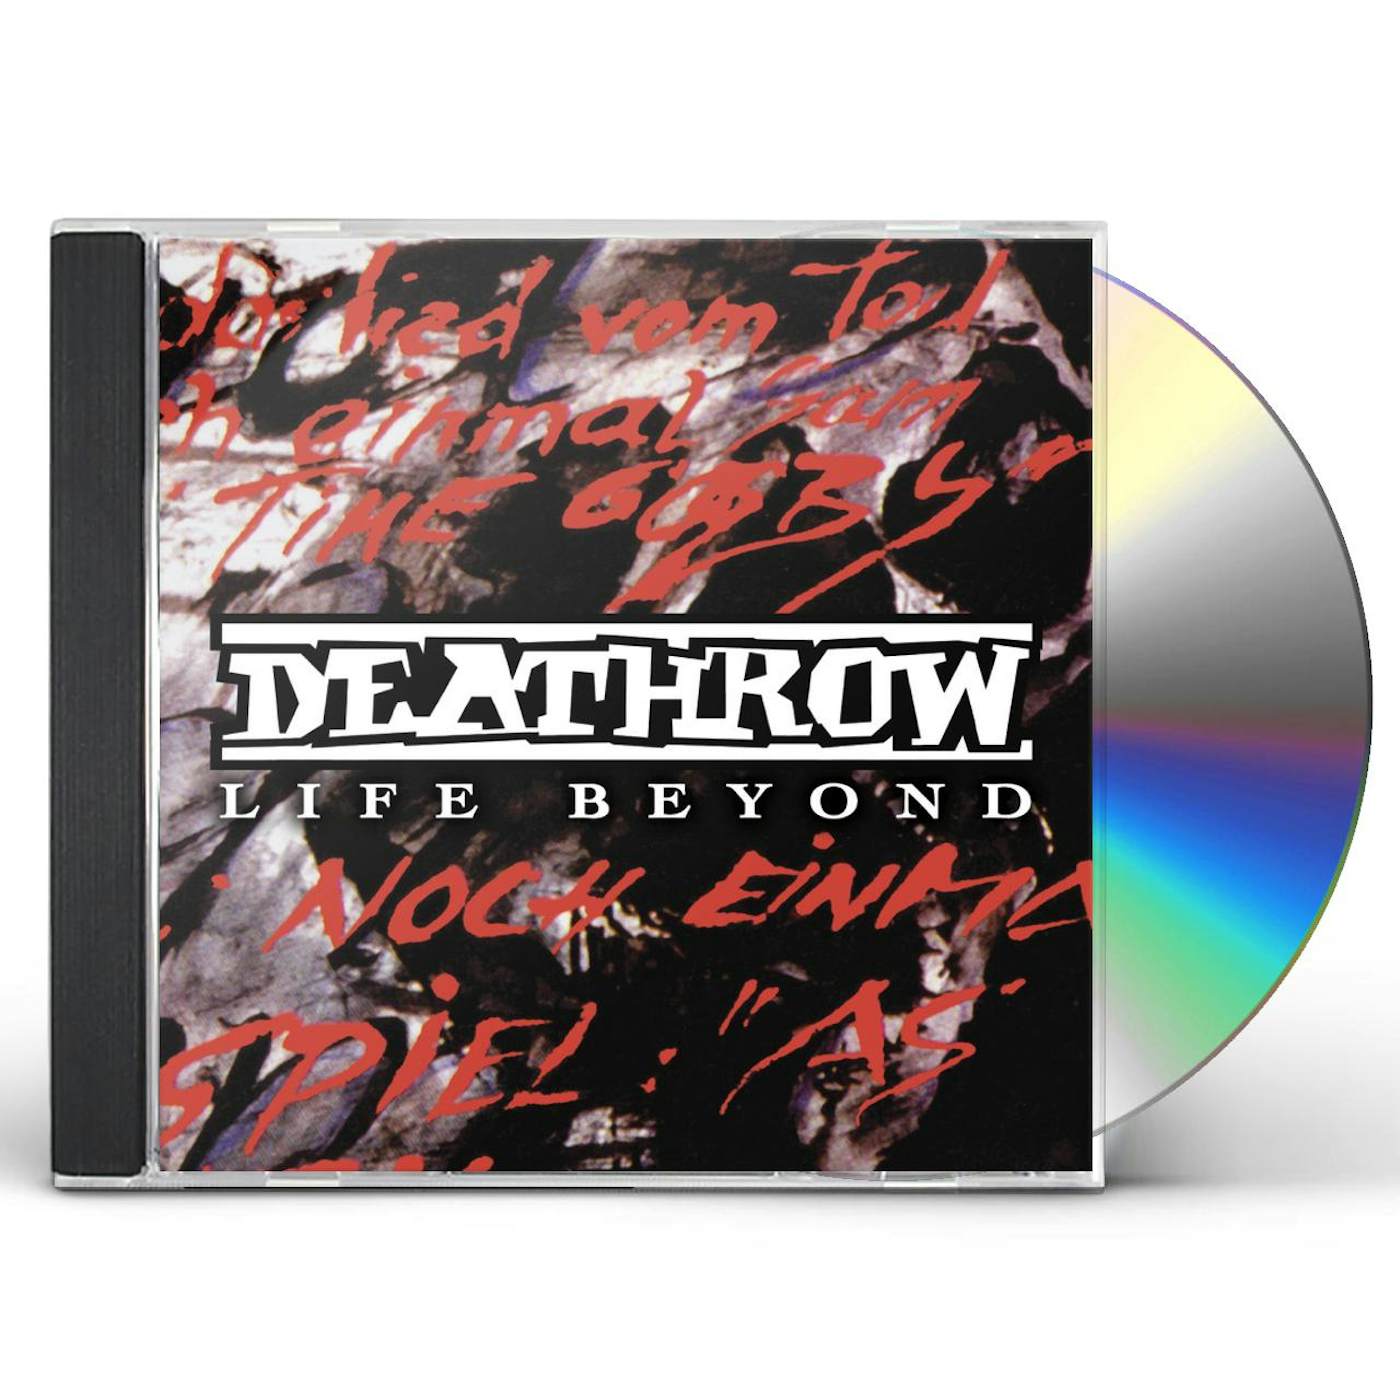 Deathrow LIFE BEYOND CD